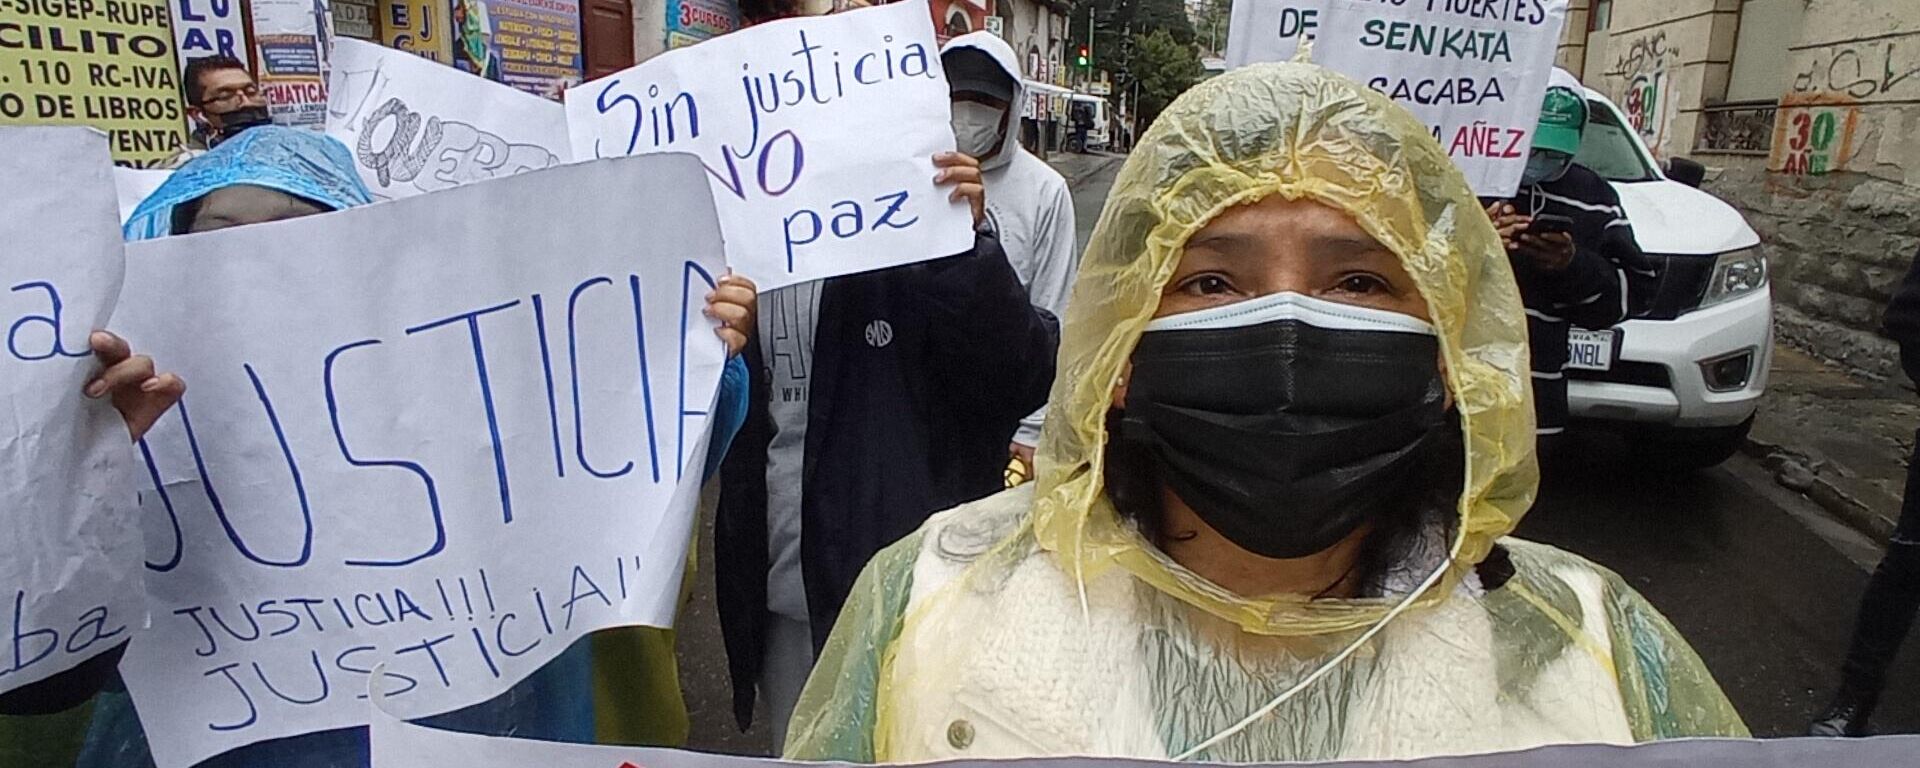 Manifestantes reclaman justicia en el primer juicio a Jeanine Áñez en Bolivia - Sputnik Mundo, 1920, 05.04.2022